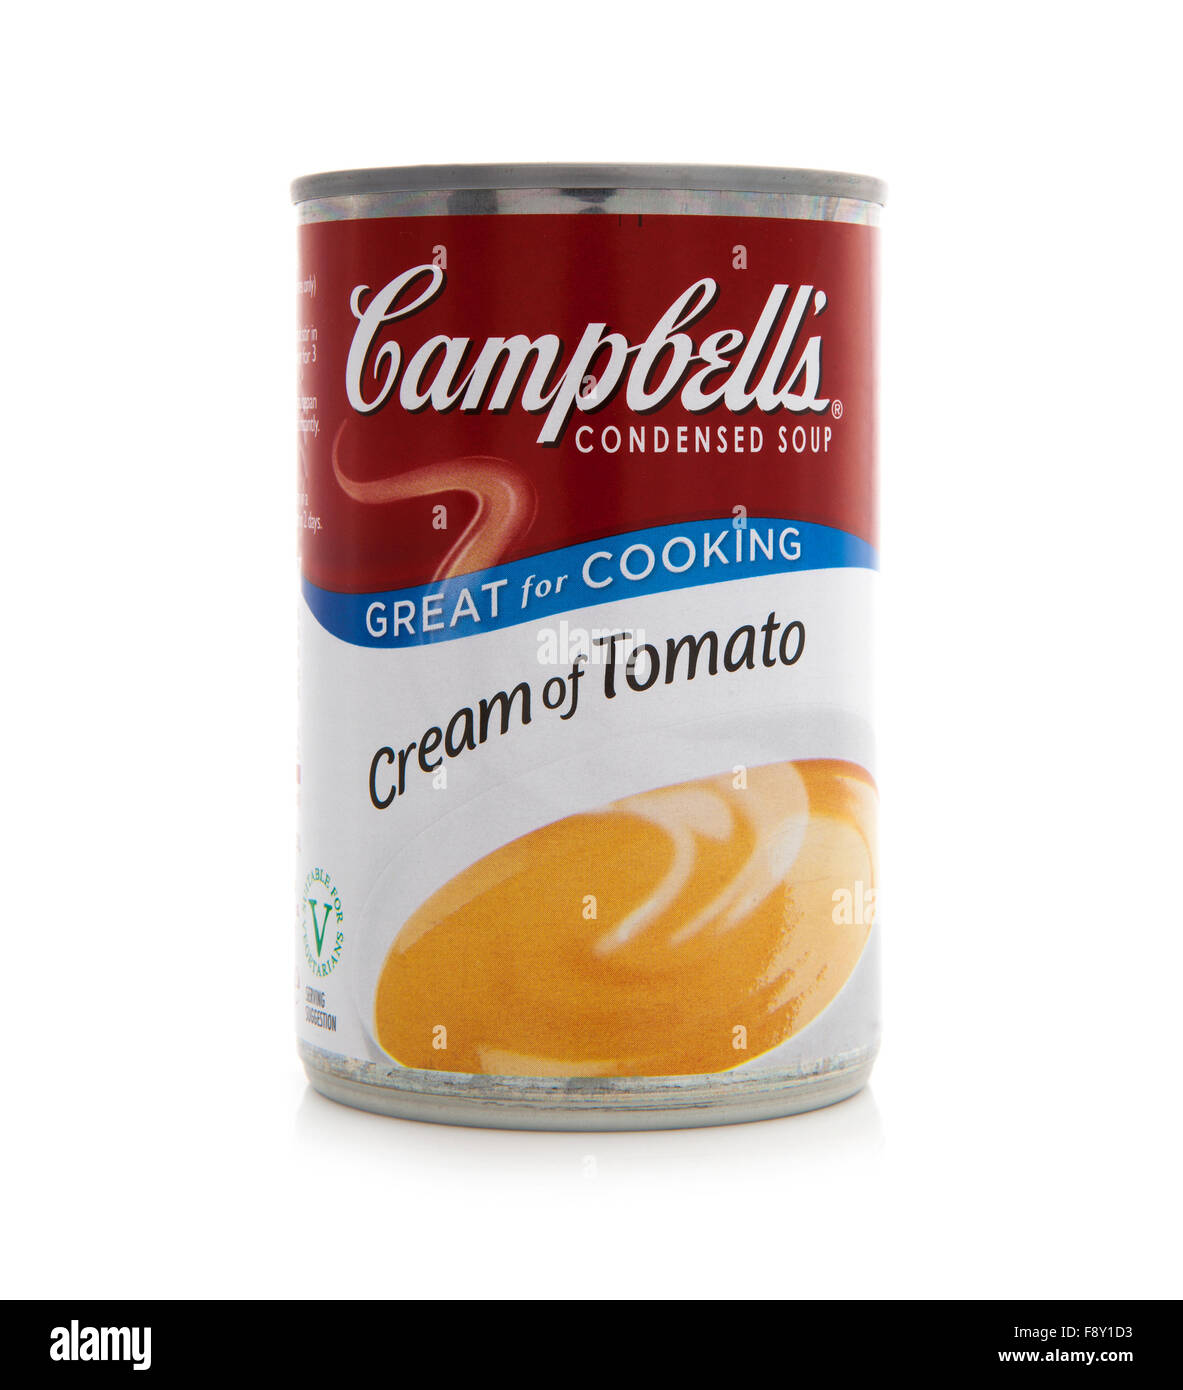 Campbells Tomatensuppe. Campbells ist ein amerikanischer Hersteller von Dosensuppen und verwandte Produkte, gegründet 1869 Stockfoto